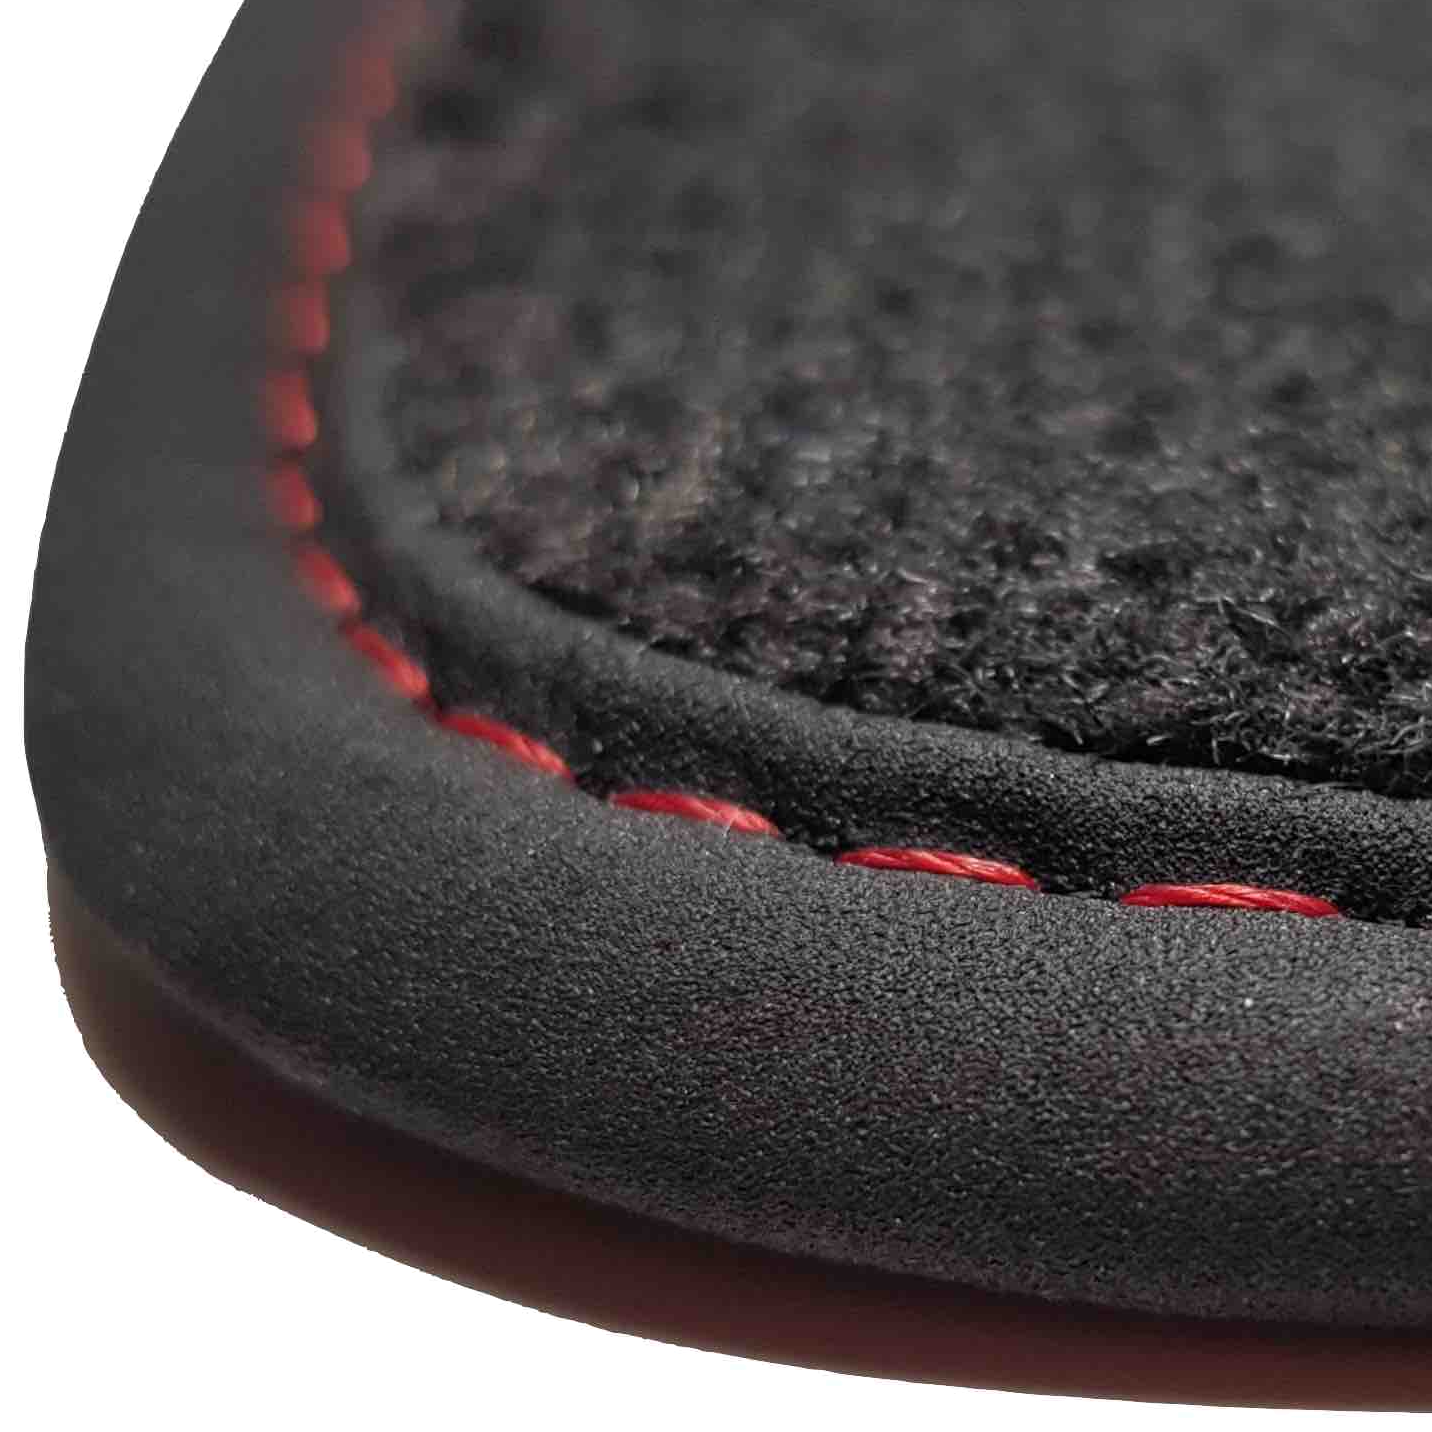 tapis auto Espace tapis de sol caoutchouc Renault prix discount livraison gratuite moquette noir bordure rouge